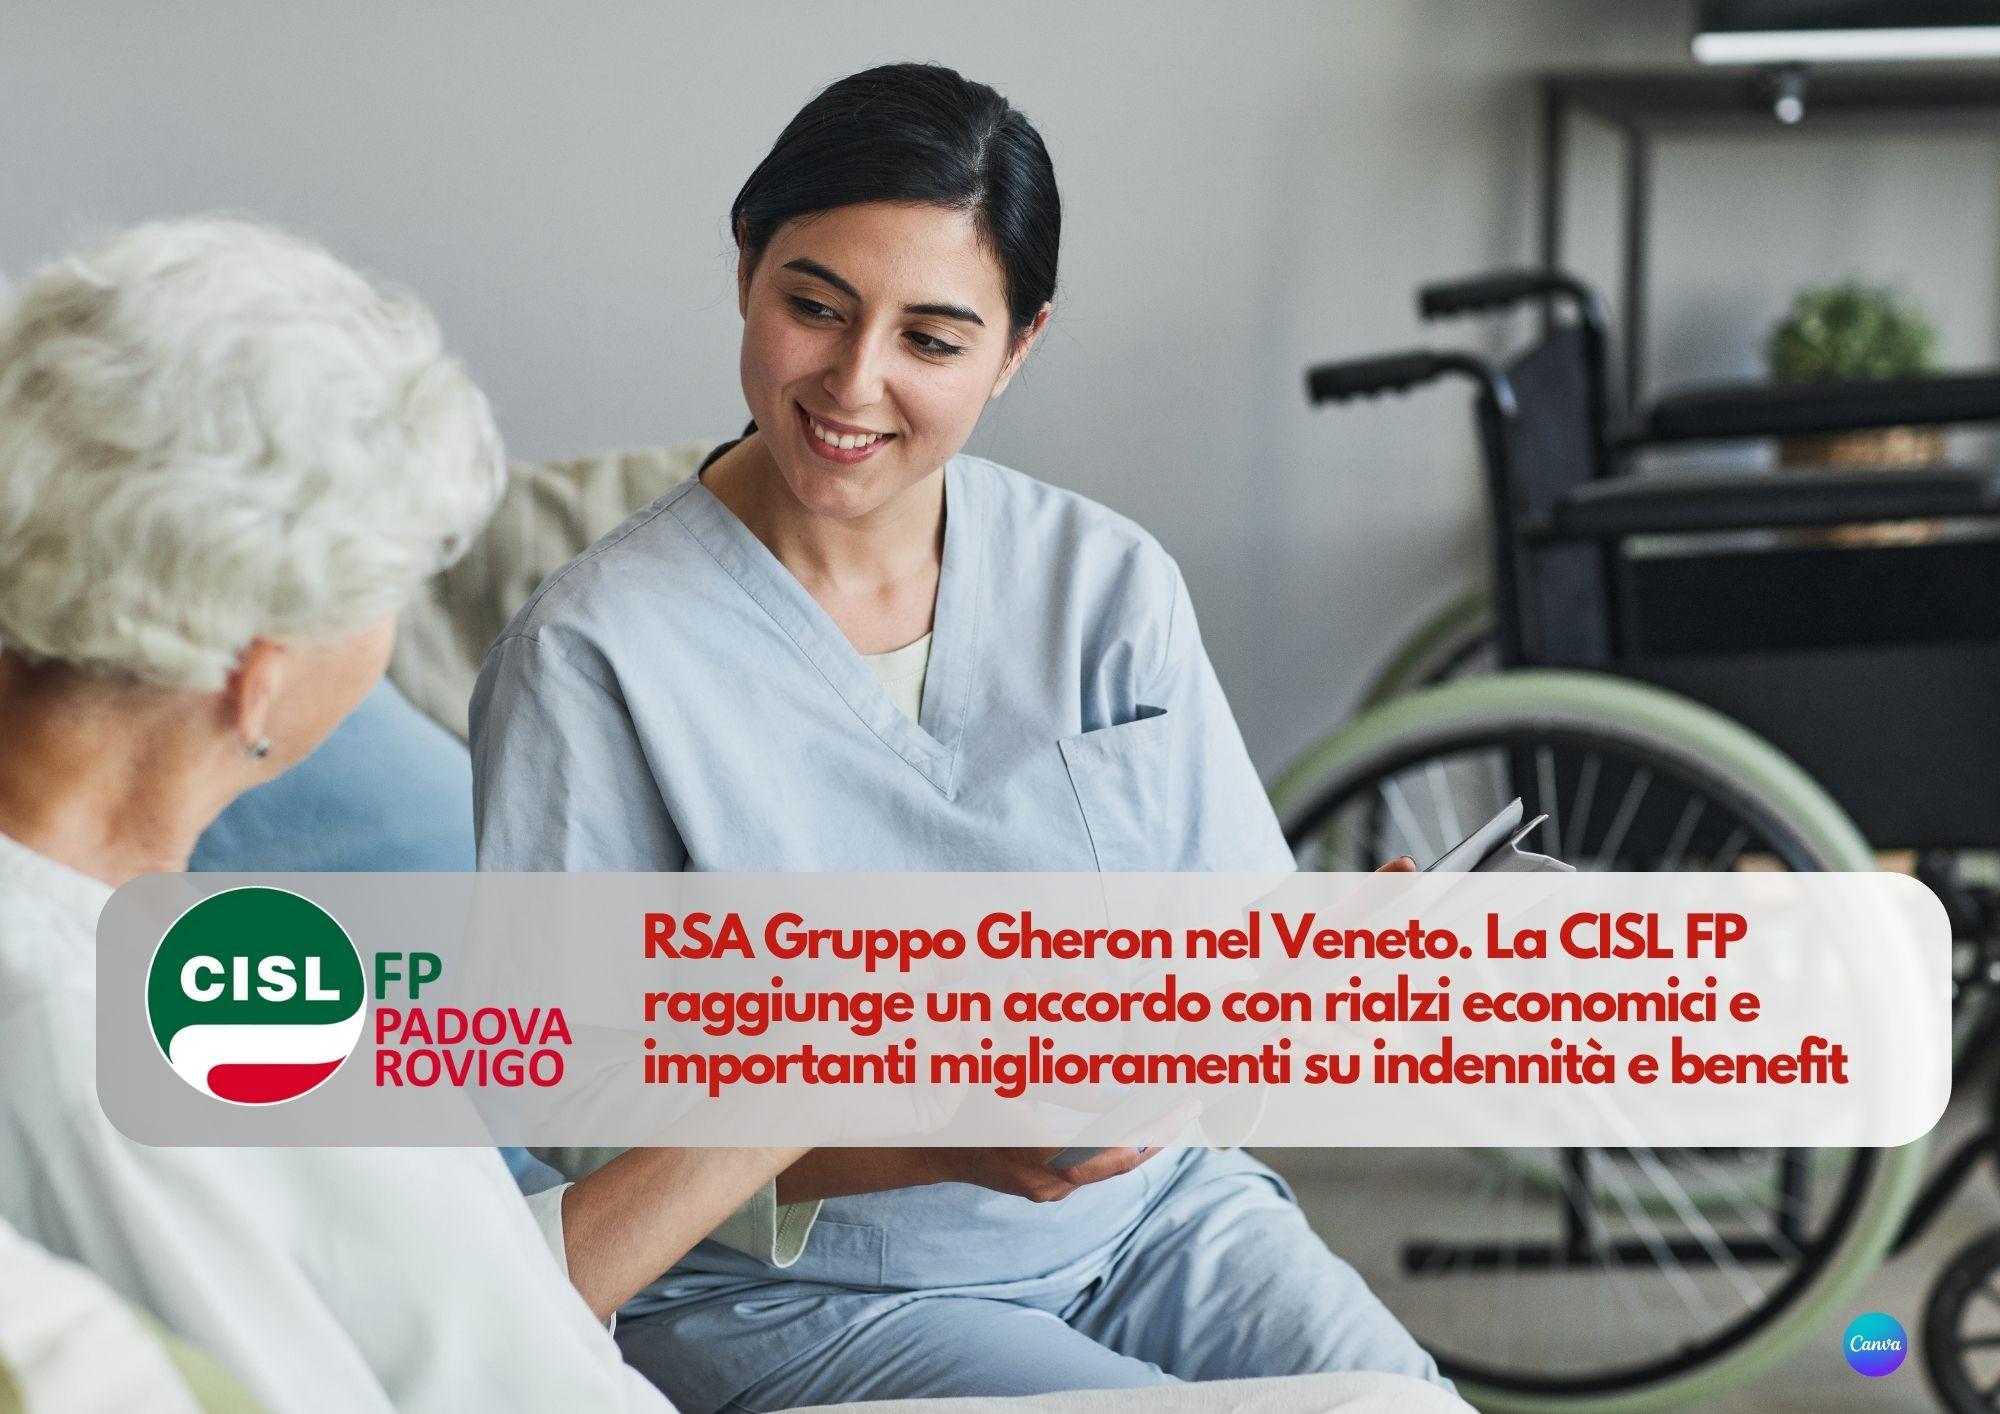 CISL FP Padova Rovigo.  Accordo per migliorare stipendi e assistenza nelle strutture del Gruppo Gheron